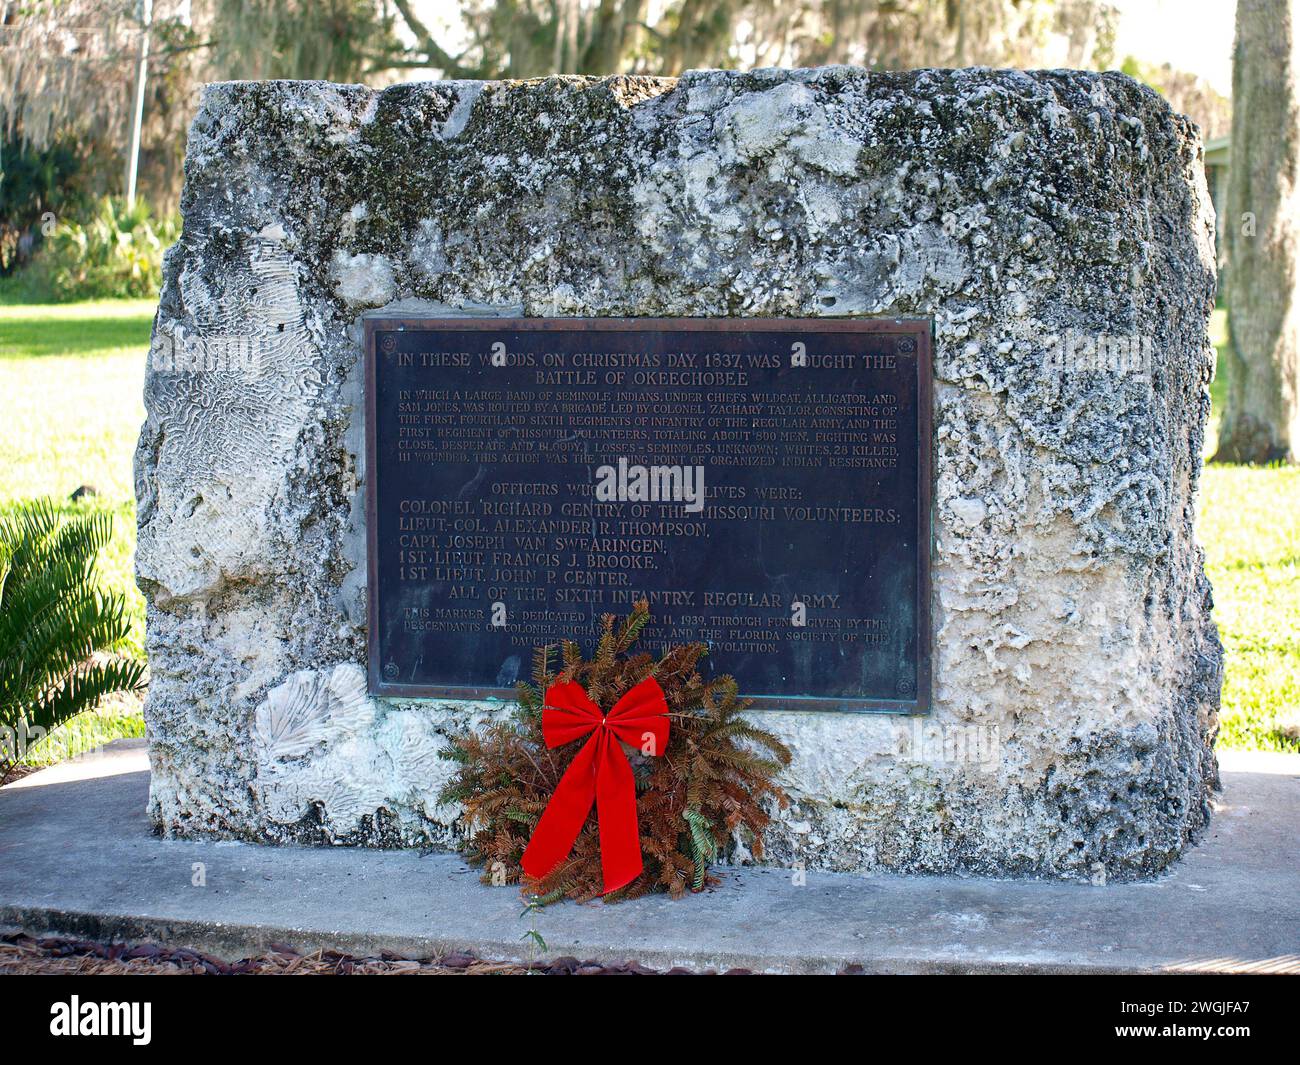 Okeechobee, Floride, États-Unis - 30 décembre 2015 : marqueur sur le site de la bataille d'Okeechobee pendant la seconde guerre séminole. Banque D'Images